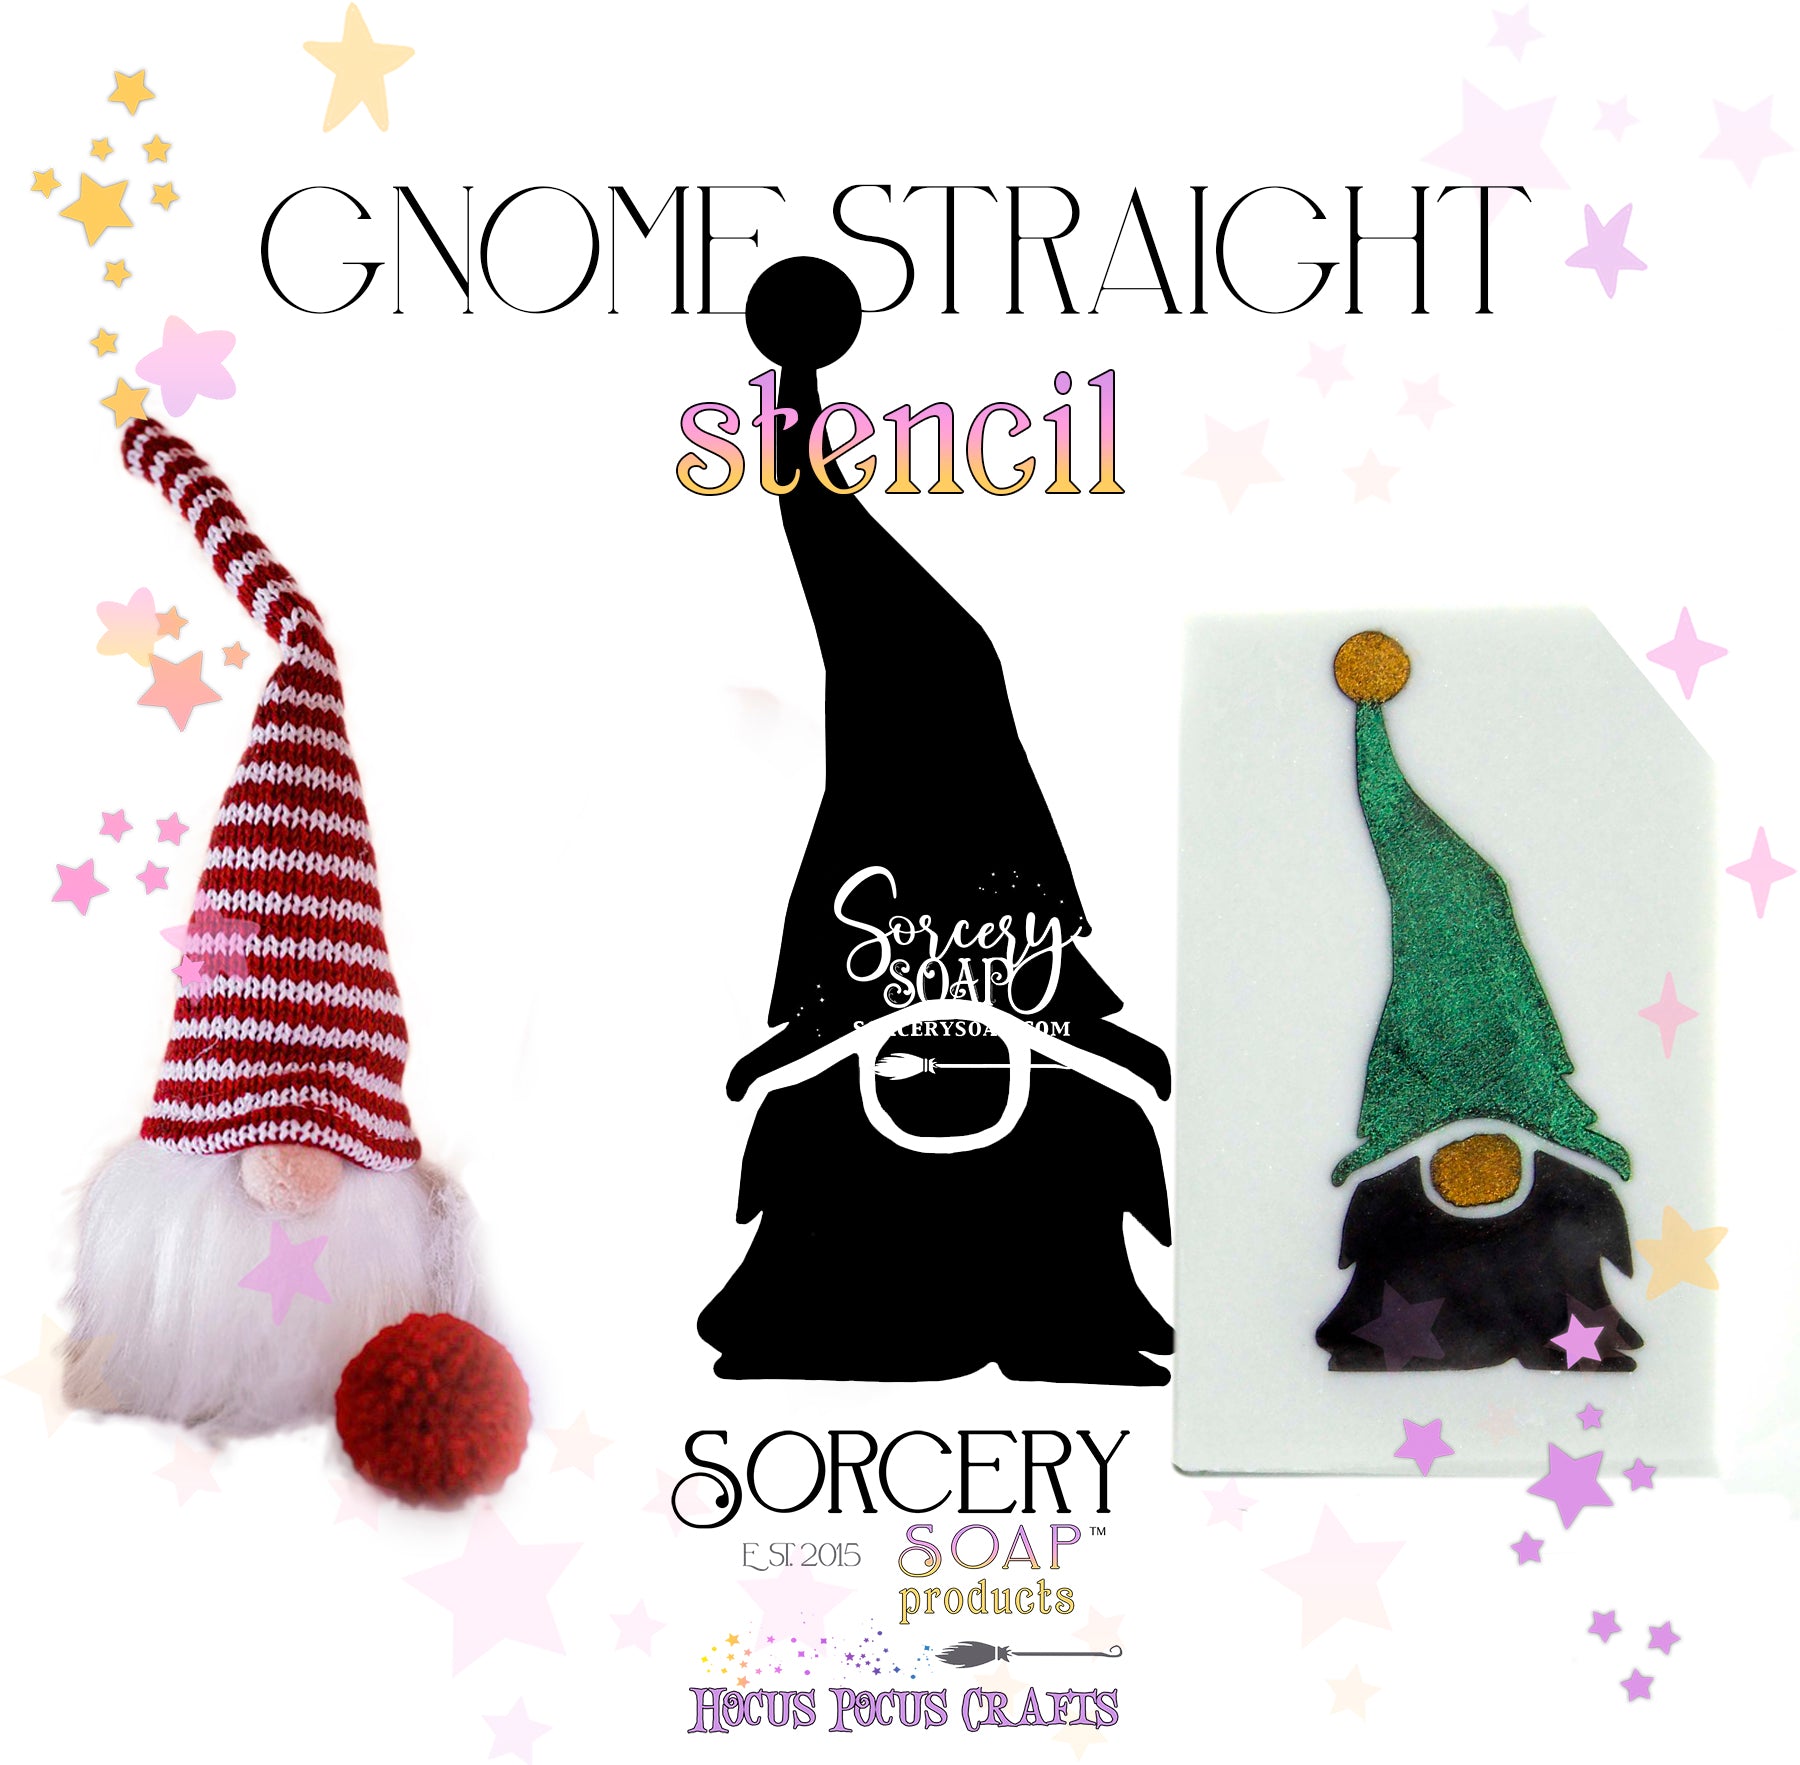 Gnome Stencil Straight